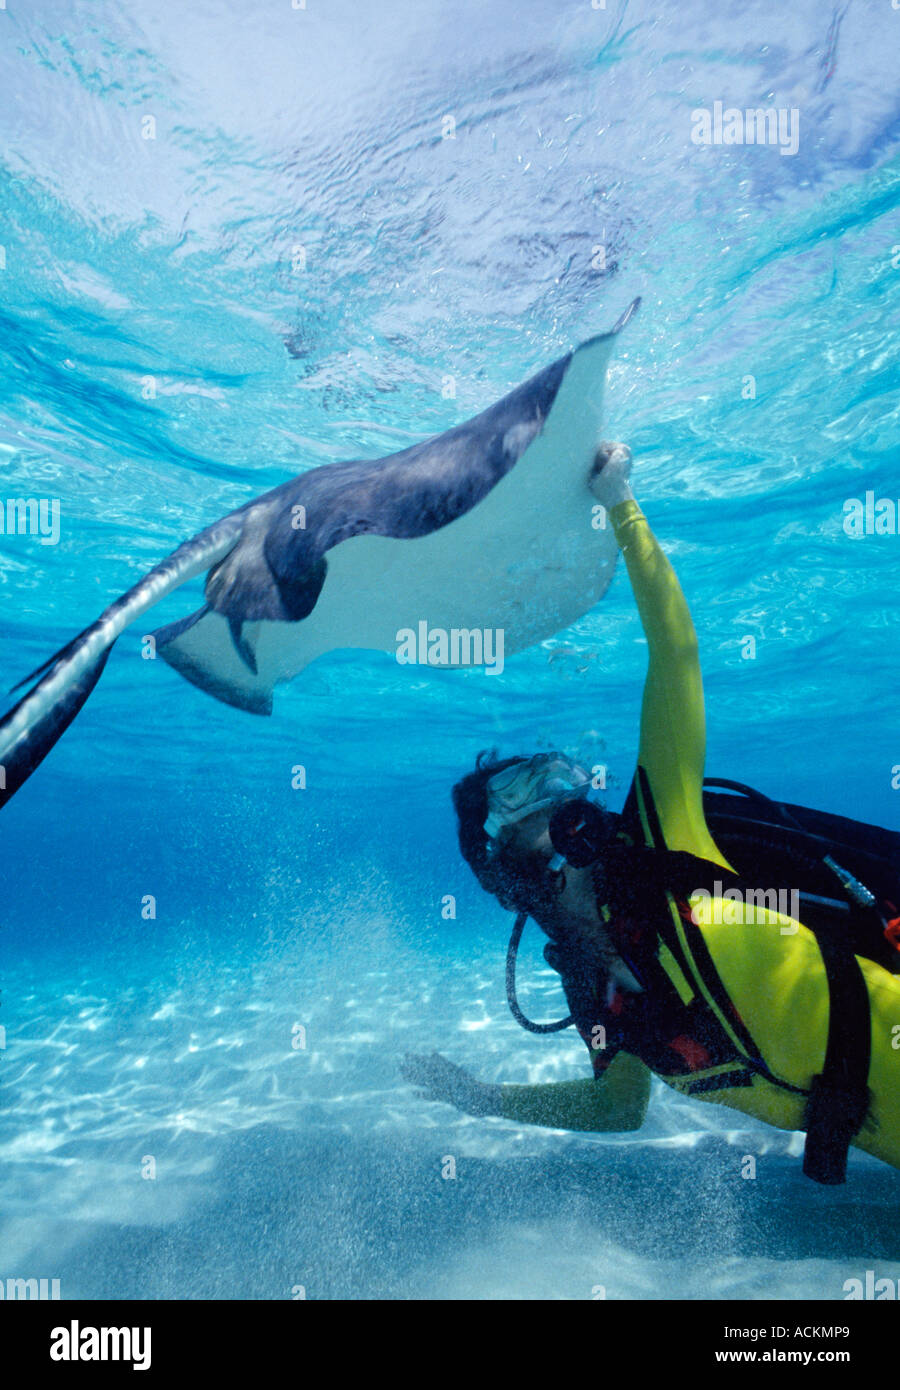 BWI-Grand Cayman-Cayman-Inseln Unterwasser Sandbank Stingray Frau Taucher in Kalk Tauchgang zu entsprechen Stockfoto